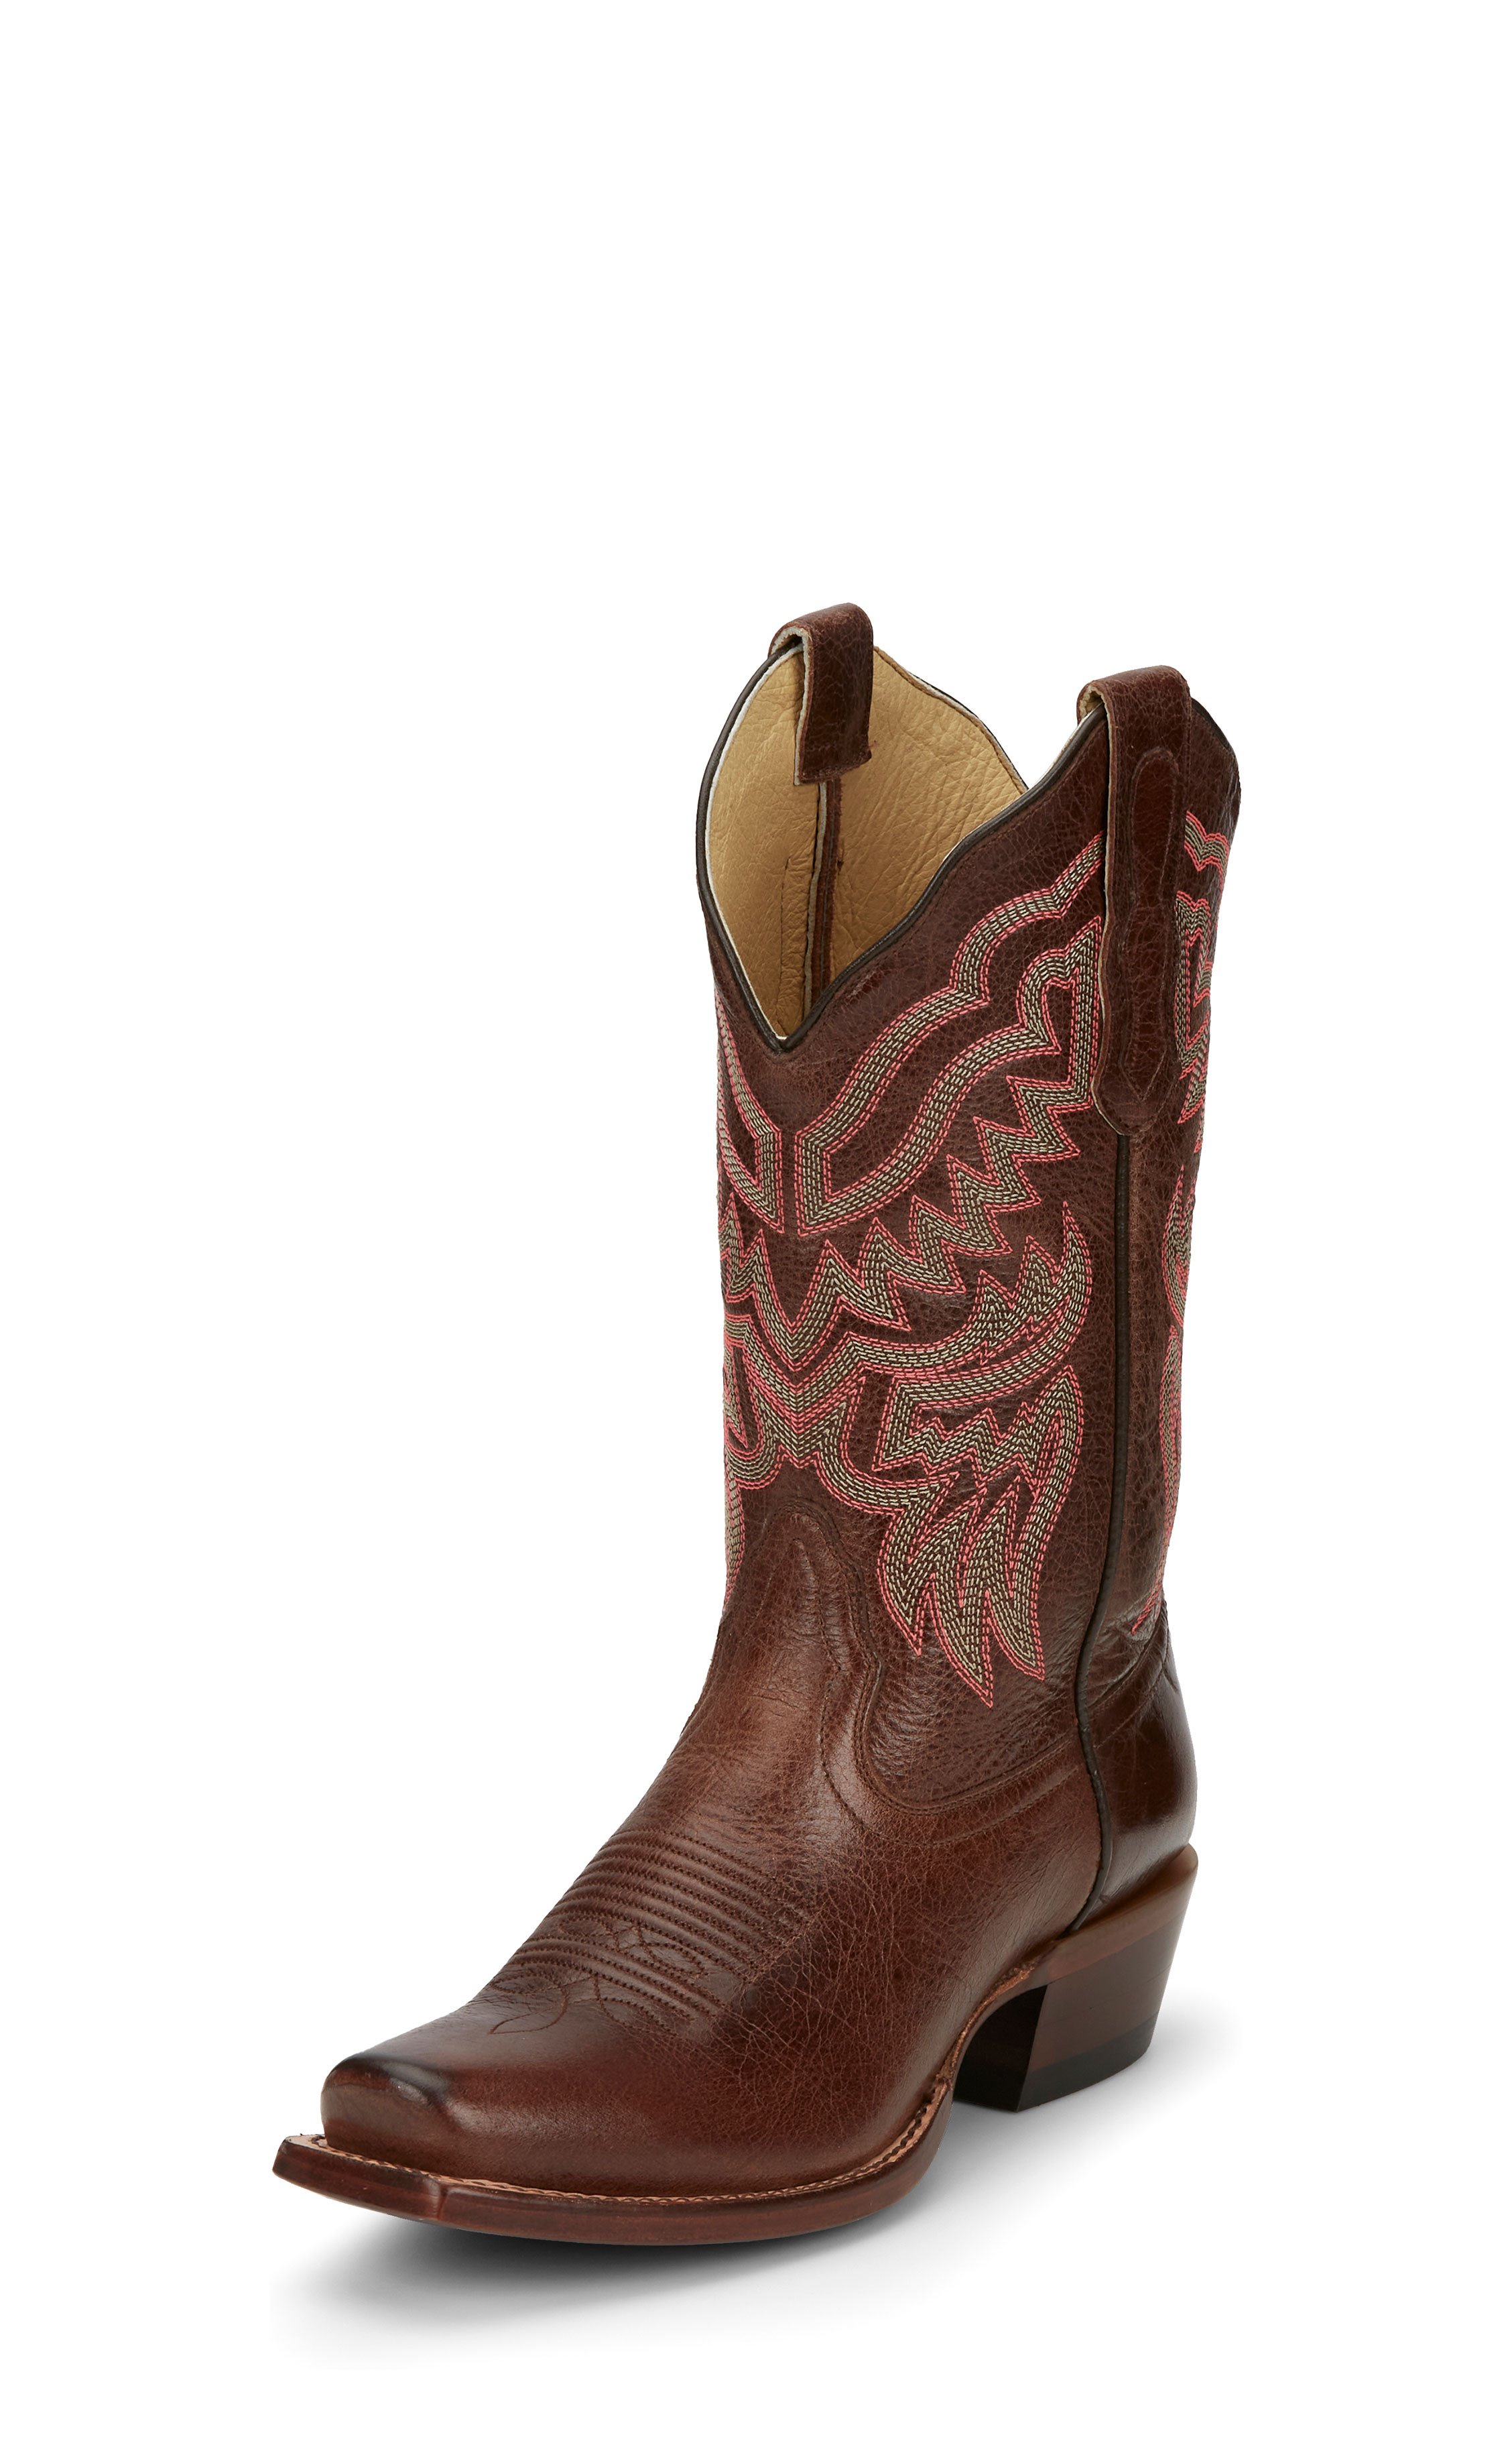 lacona boots